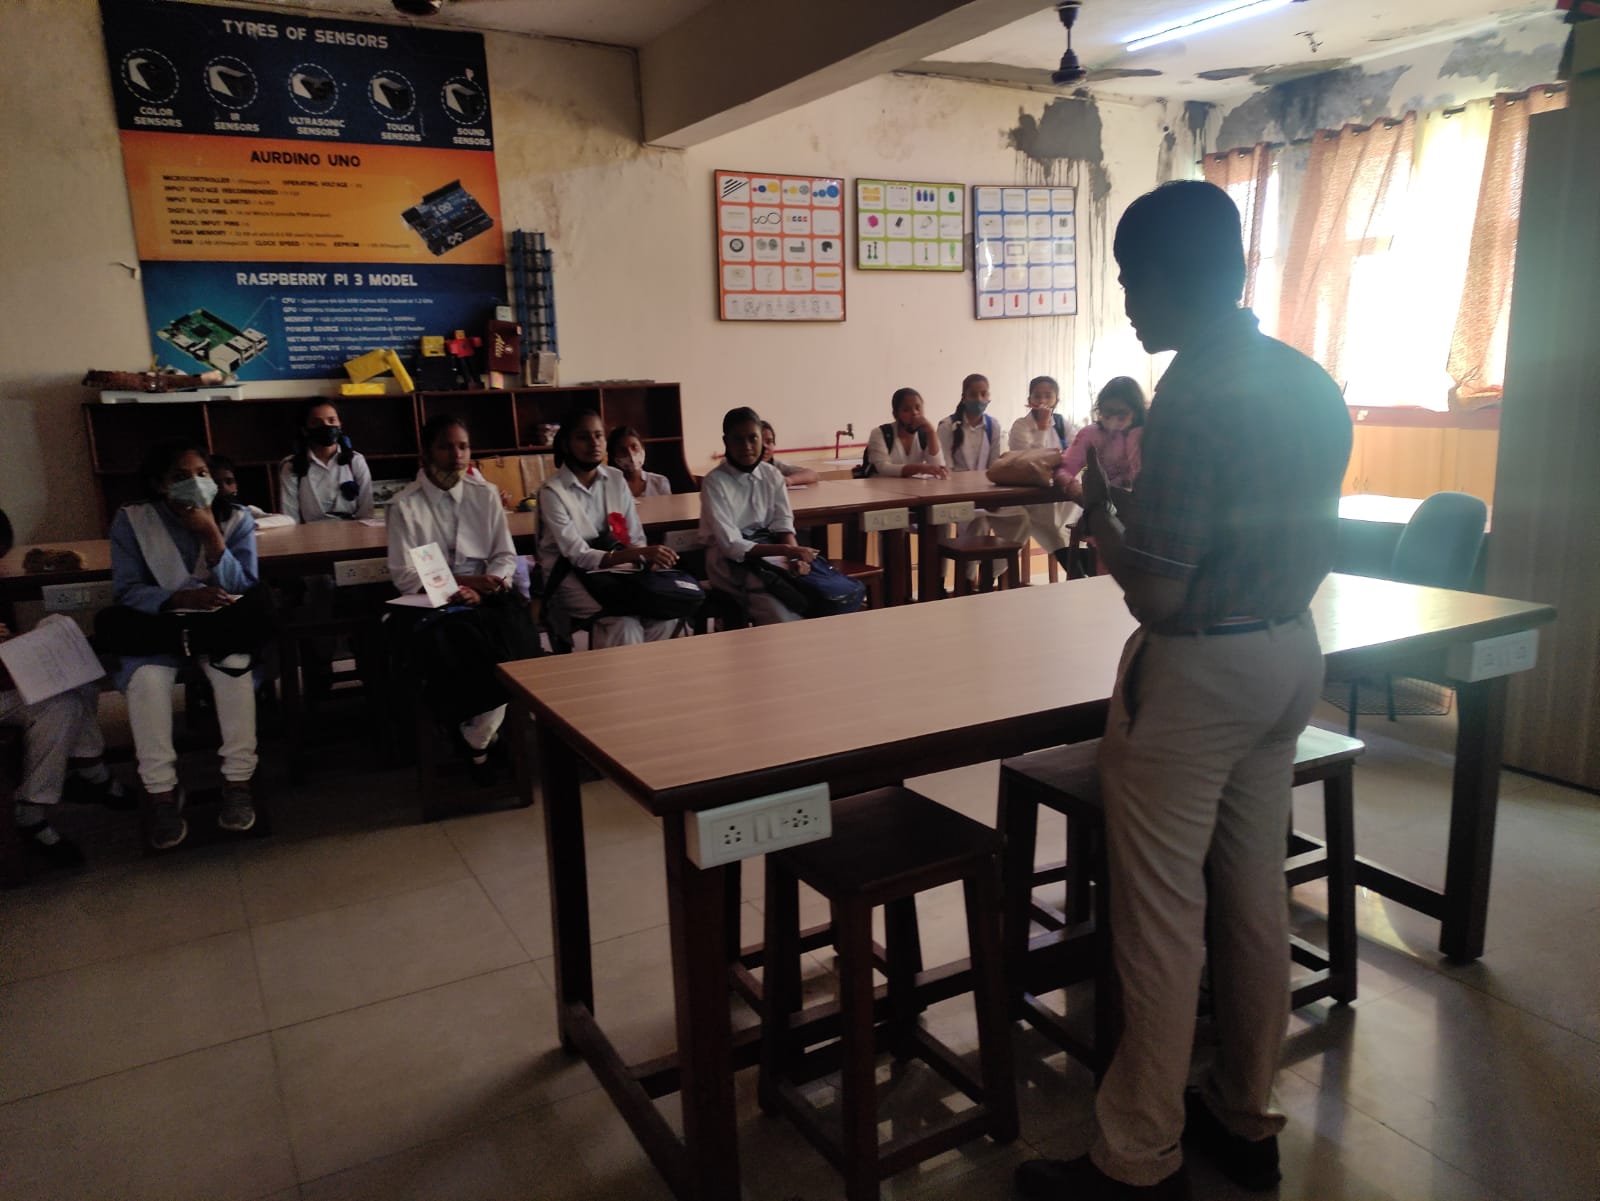 Aditya gives talks to an audience that comprises students from Delhi's kendriya vidyalayas